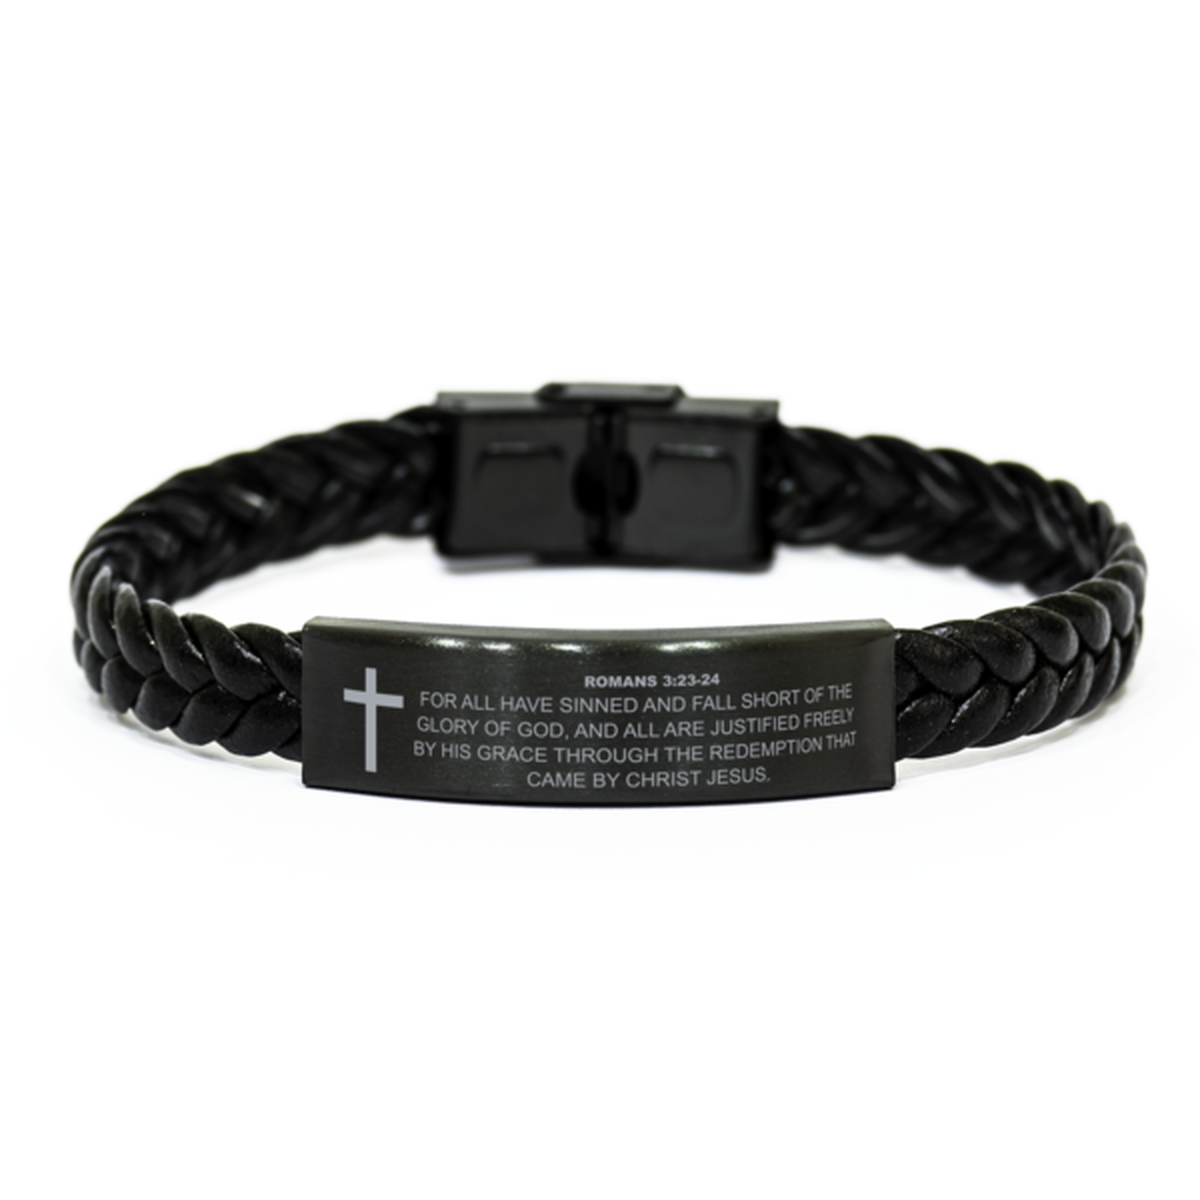 Romans 3:23-24 Bracelet, For All Have Sinned And Fall Short, Bible Verse Bracelet, Christian Bracelet, Braided Leather Bracelet, Easter Gift